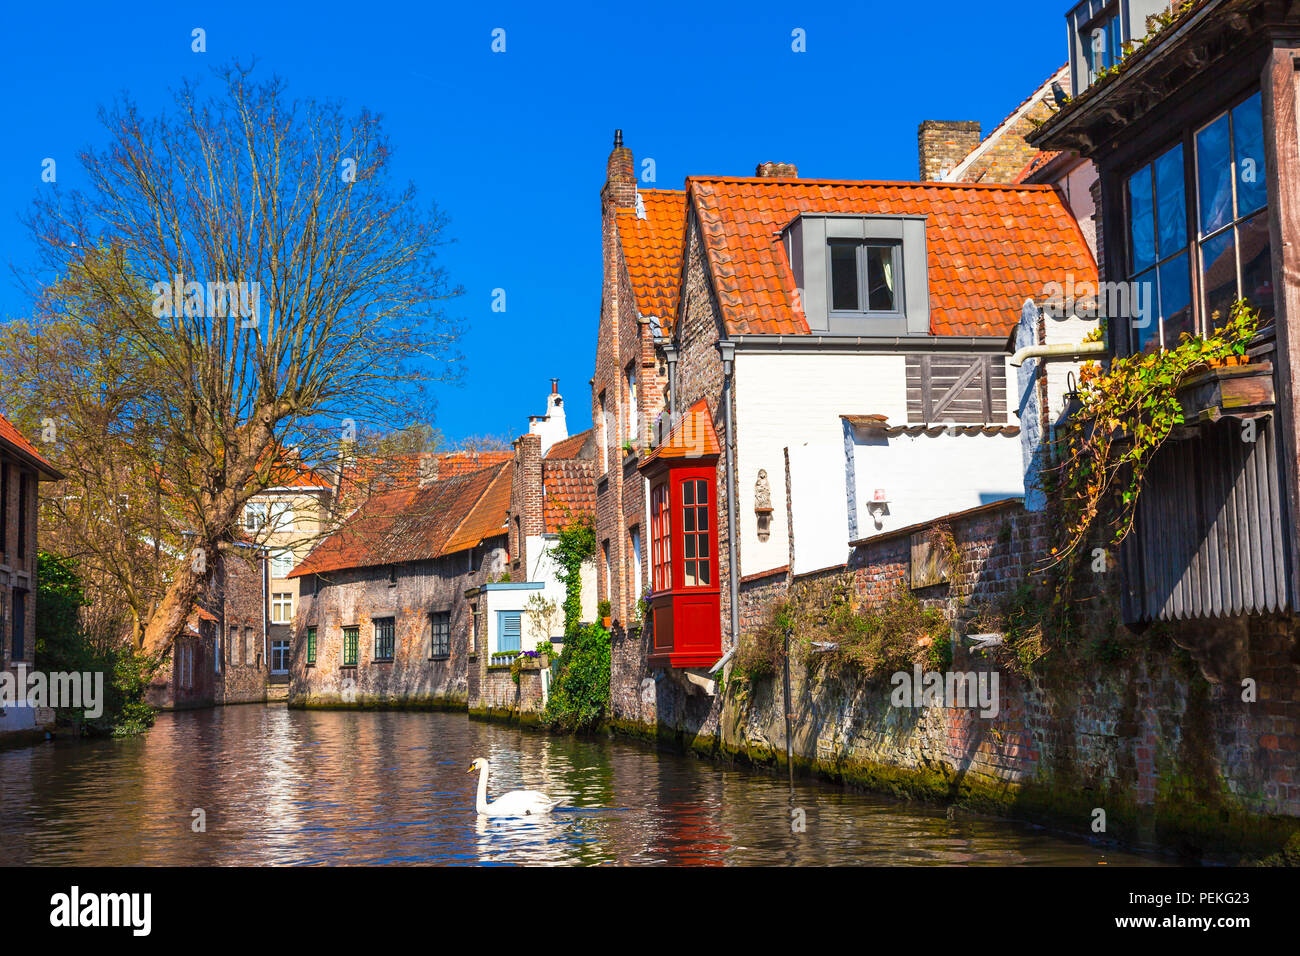 Impresionante vista de la ciudad de Brujas, con canales y casas,Bélgica. Foto de stock